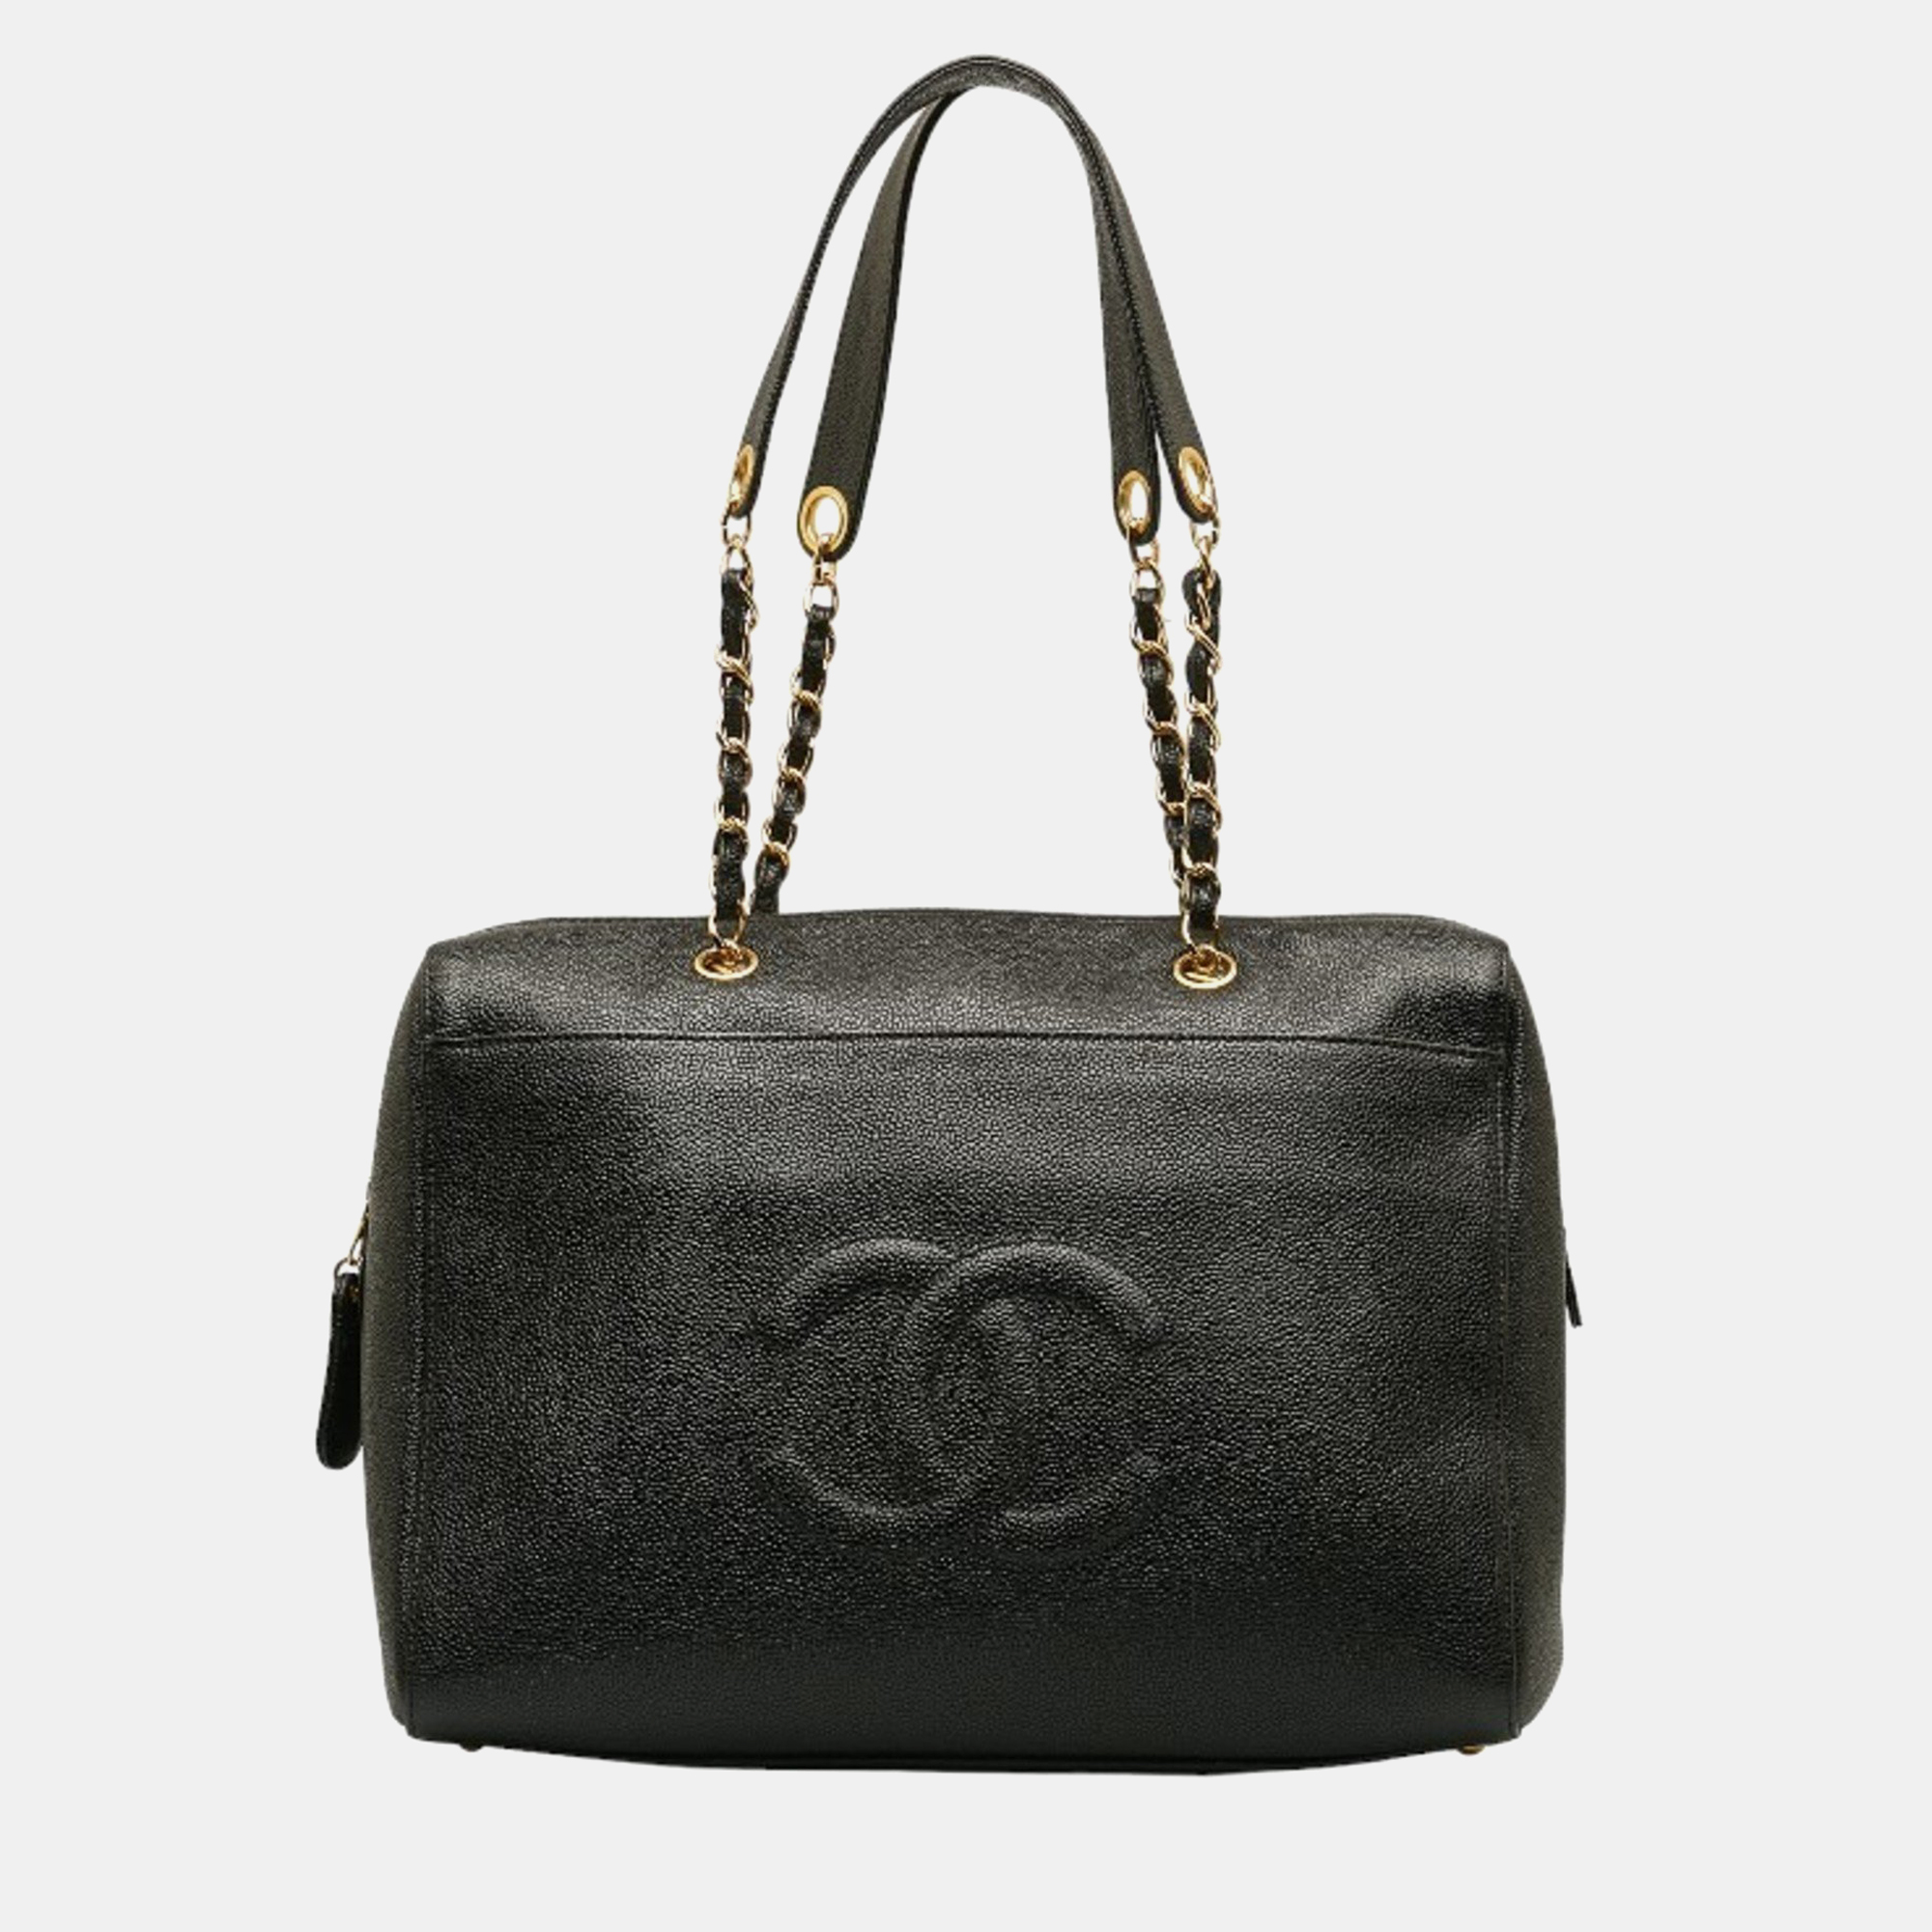 Chanel black leather cc timeless dome shoulder bag